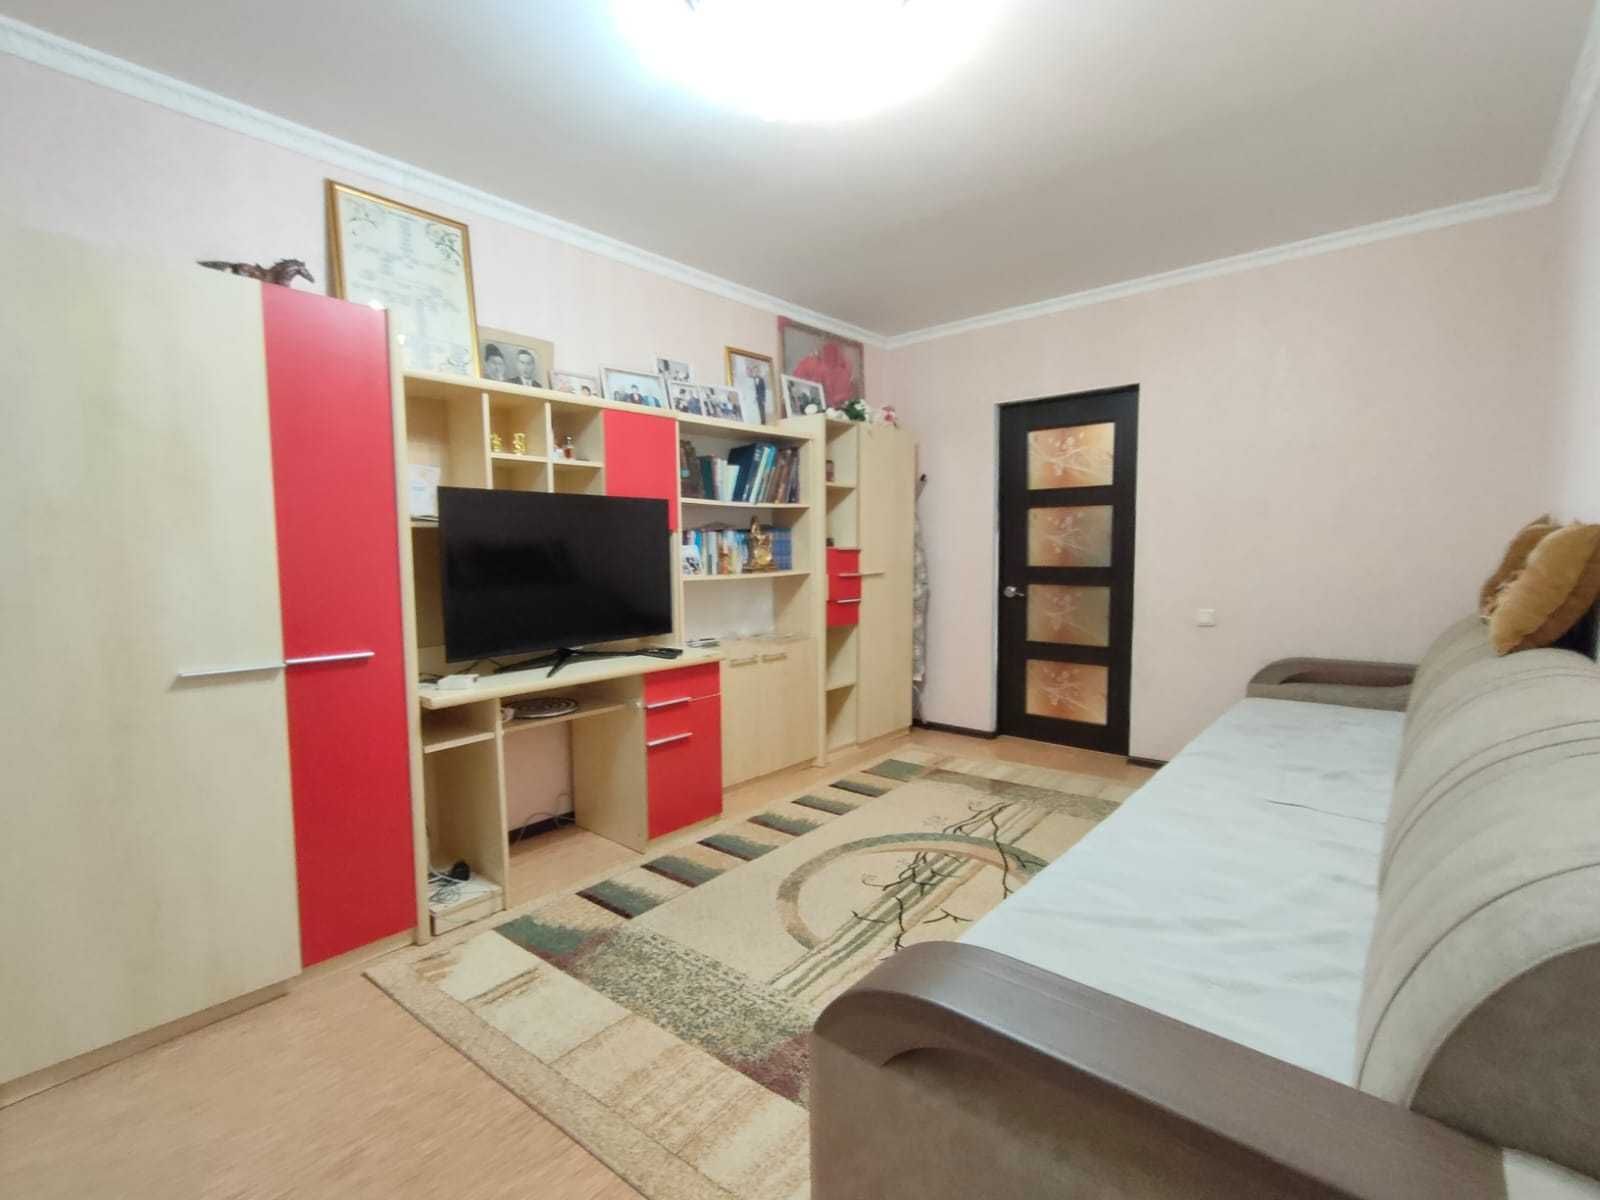 продам 3 комнатную квартиру в районе Болашак СРОЧНО ТОРГ